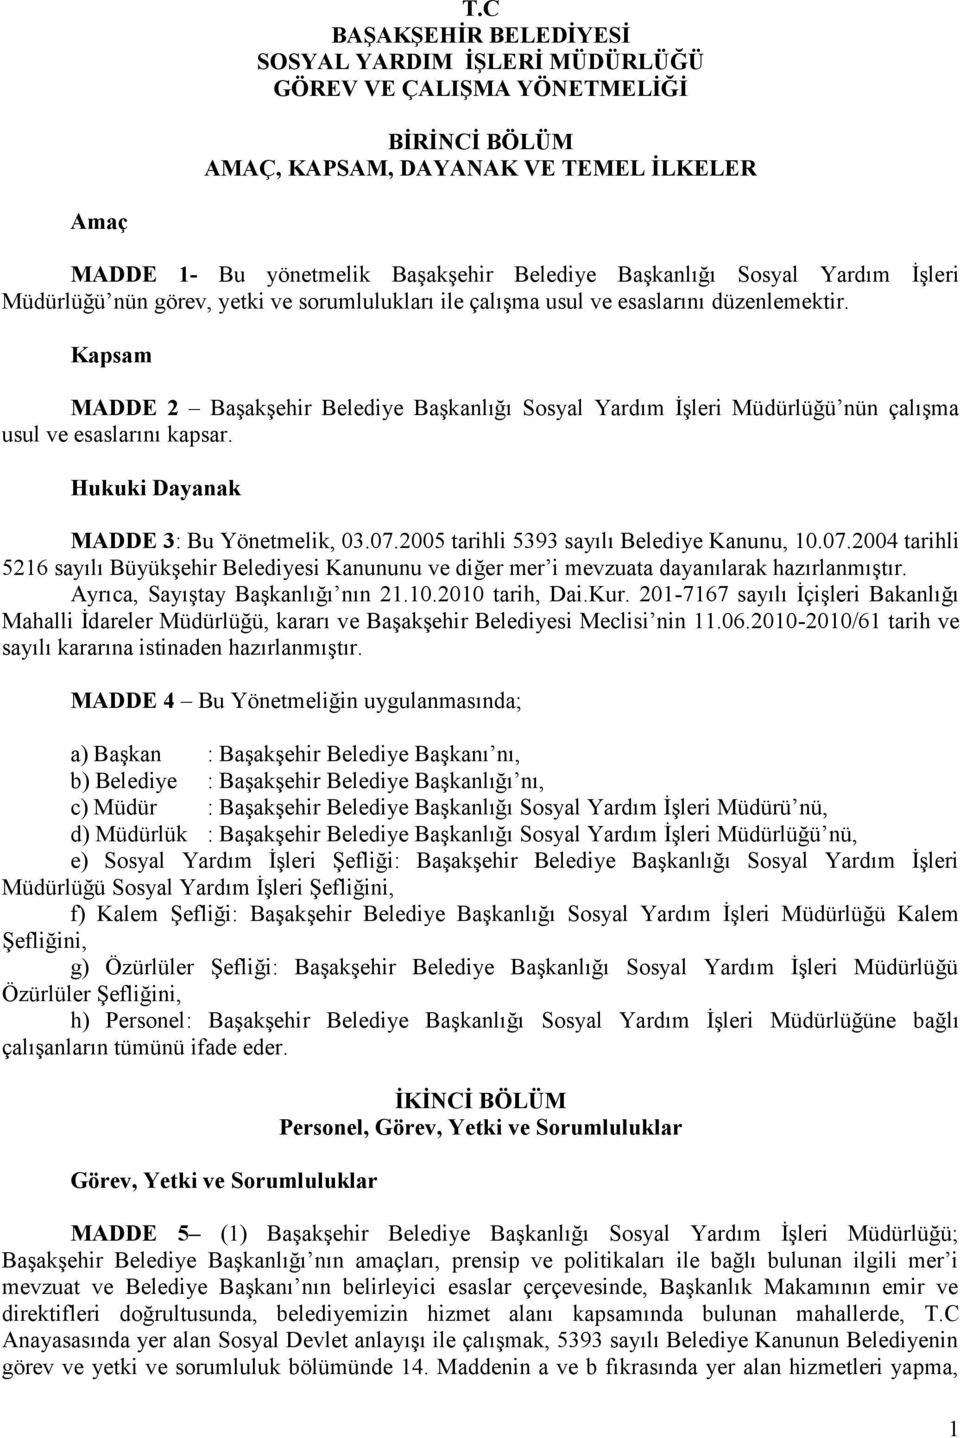 Kapsam MADDE 2 Başakşehir Belediye Başkanlığı Sosyal Yardım İşleri Müdürlüğü nün çalışma usul ve esaslarını kapsar. Hukuki Dayanak MADDE 3: Bu Yönetmelik, 03.07.